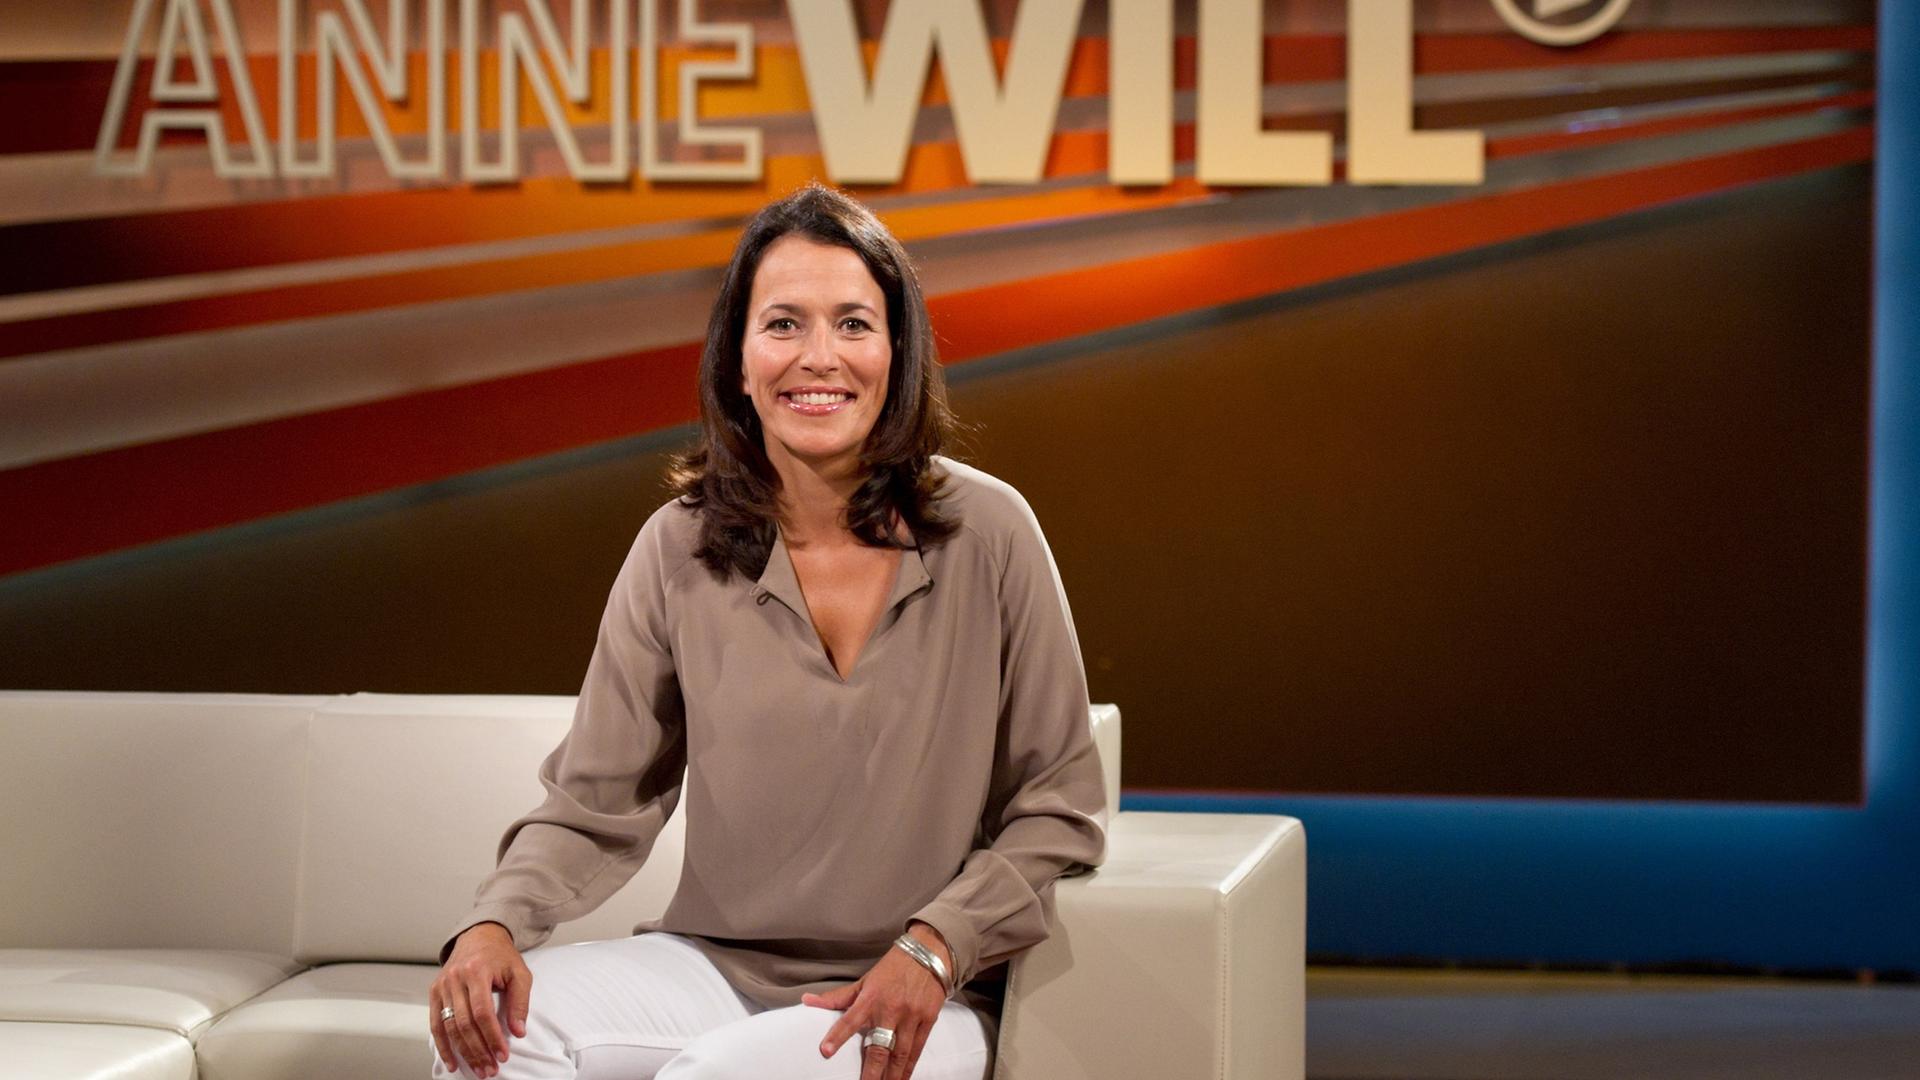 Die Journalistin Anne Will sitzt im Studio. Im Hintergrund ist der Schriftzug ihrer Talksendung "Anne Will" zu sehen. Sie trägt eine beigefarbene Bluse und eine weiße Hose.